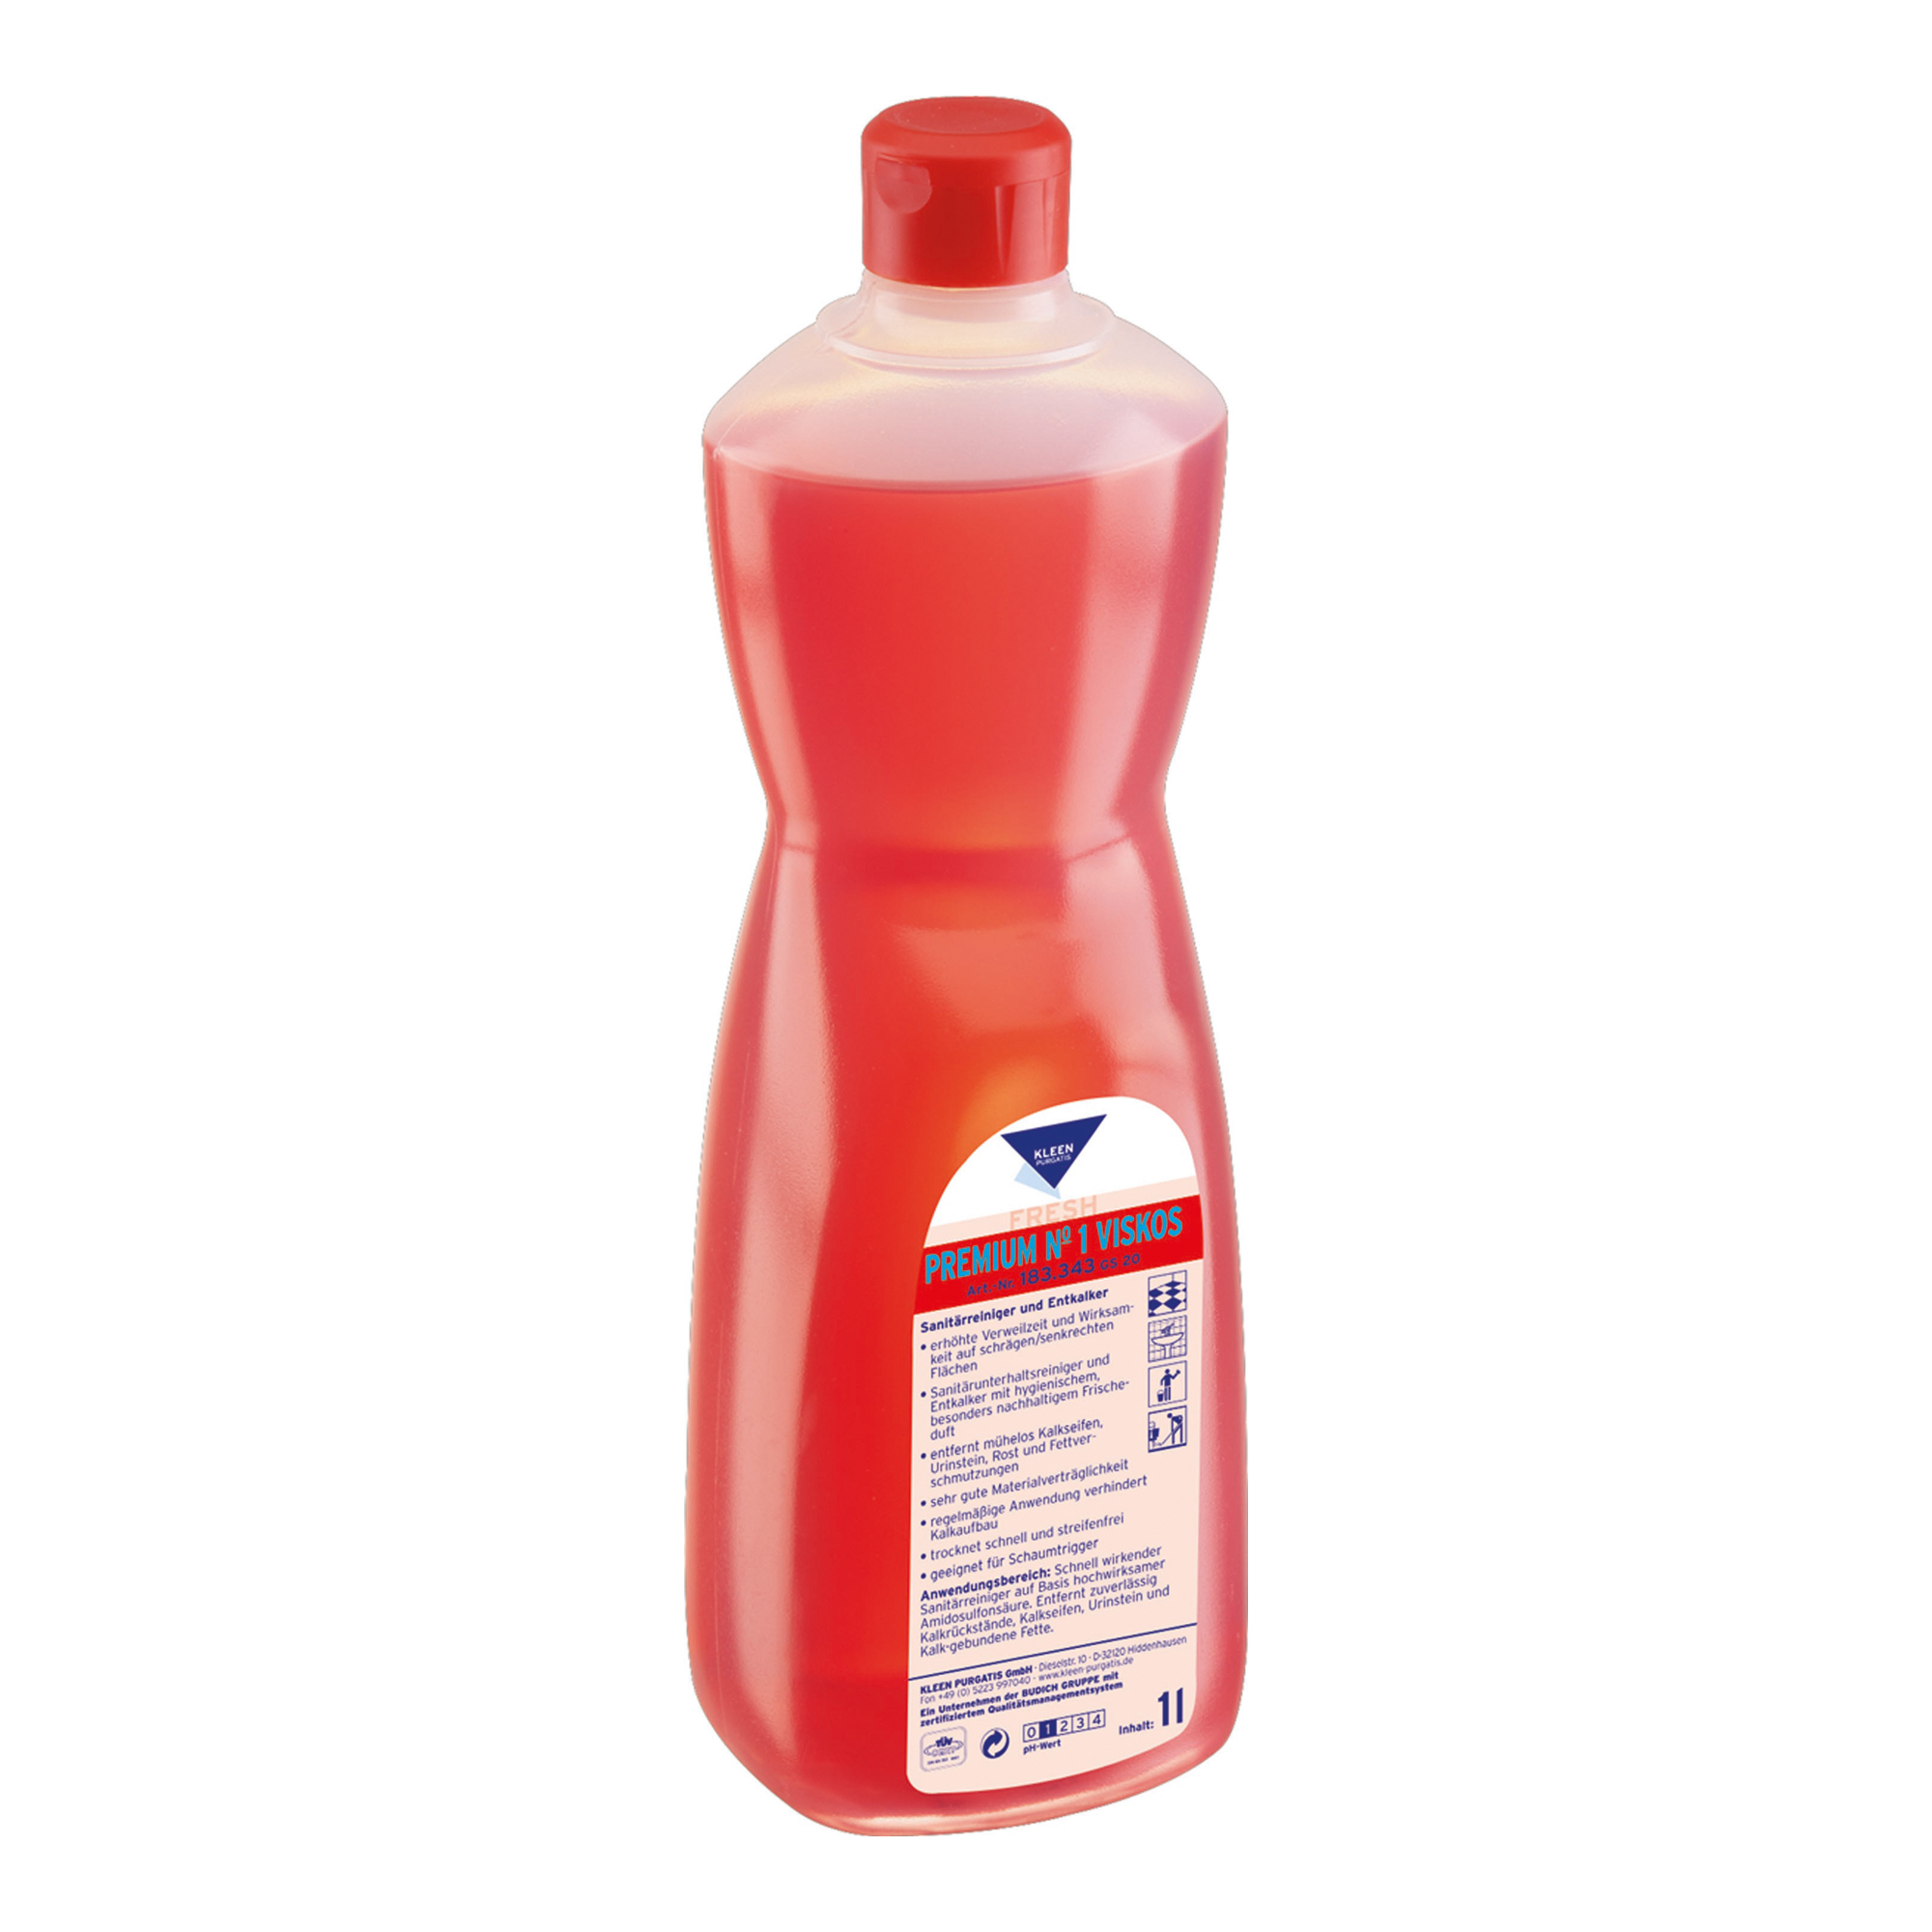 Kleen Purgatis Premium No 1 Viskos Sanitärunterhaltsreiniger 1 Liter Flasche 90183343_1